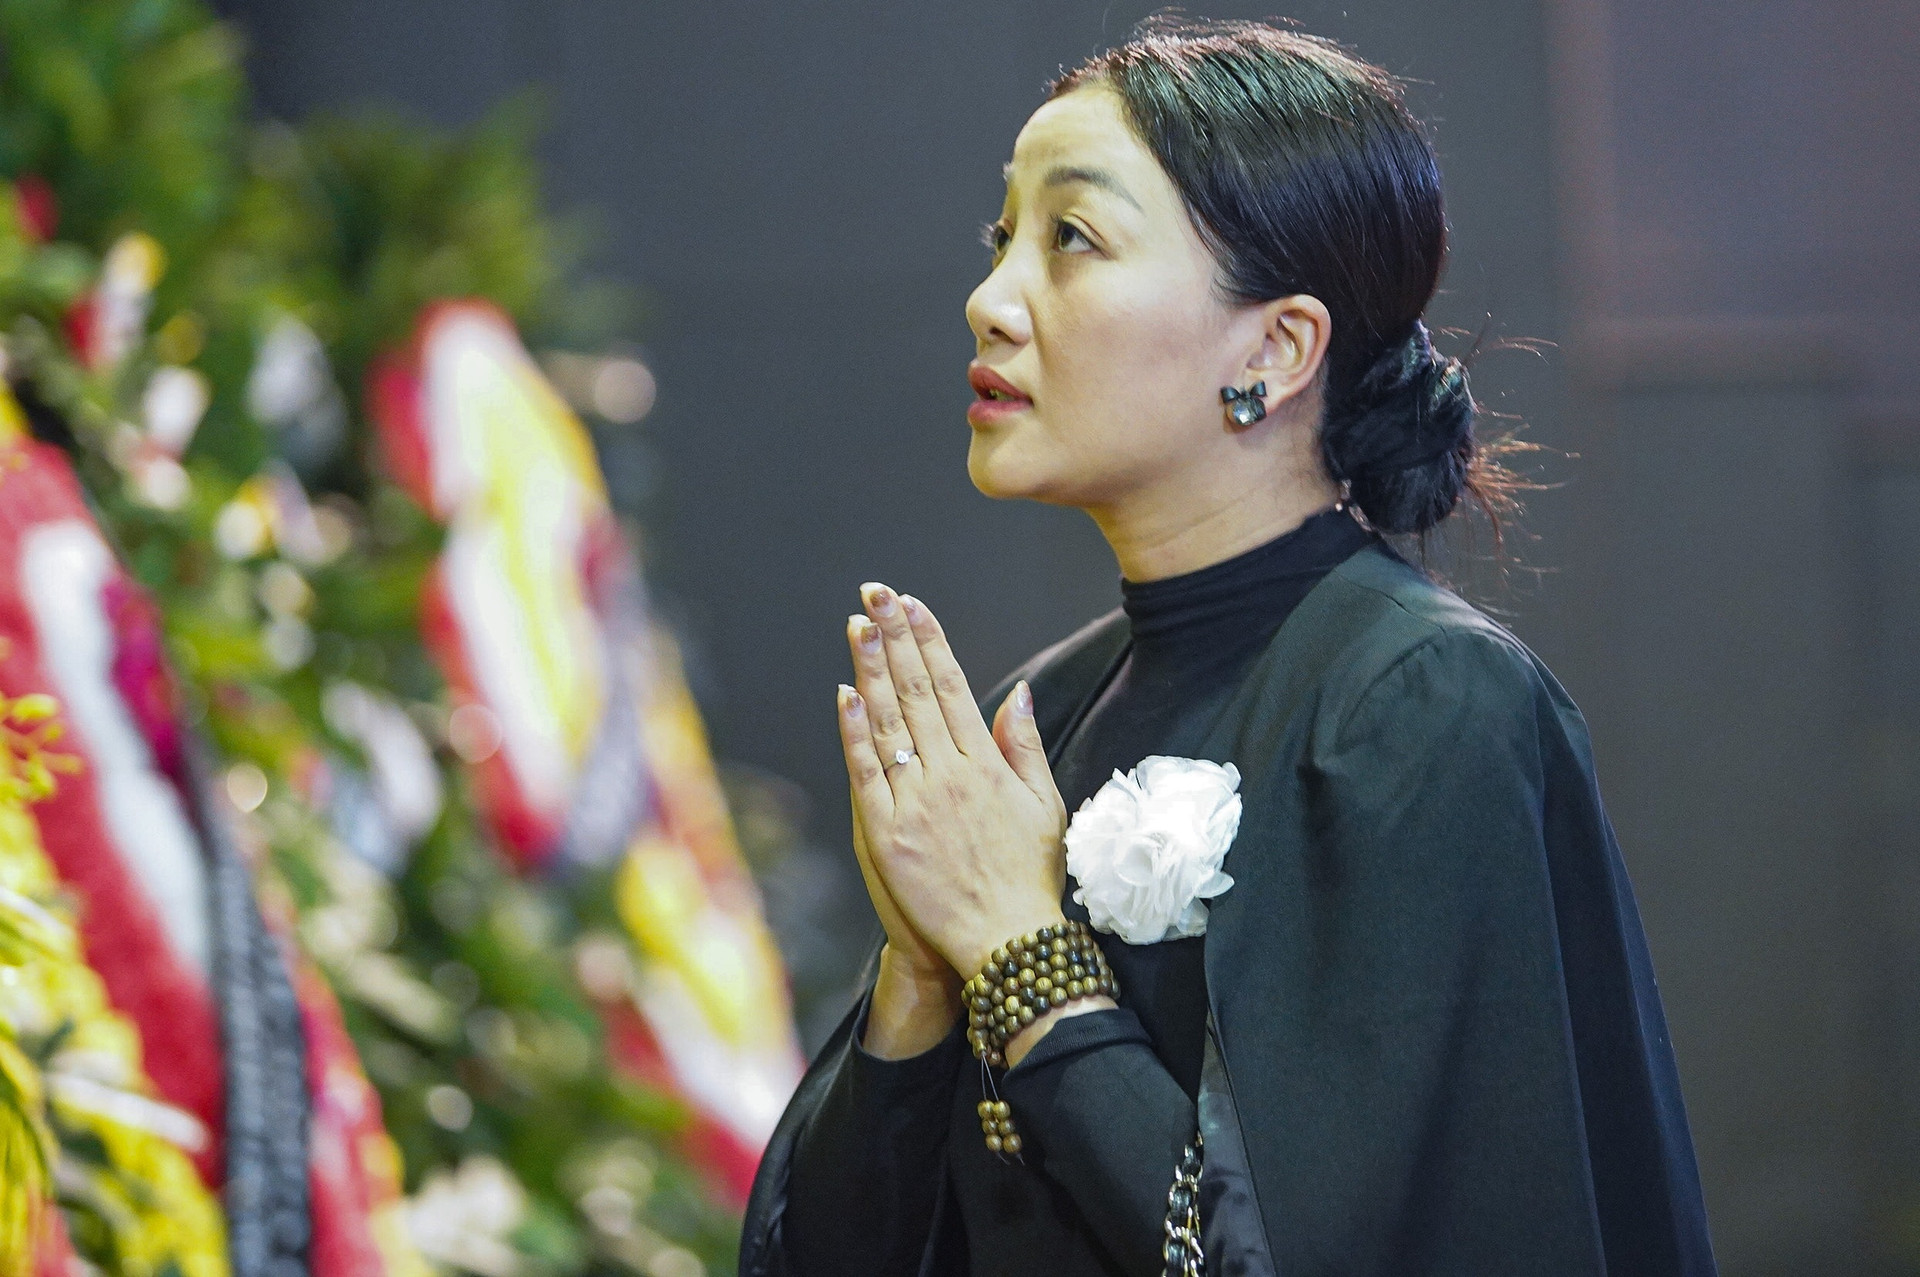 NS Đặng Thái Sơn chơi Hành khúc tang lễ tiễn biệt mẹ - NGND Thái Thị Liên - 12